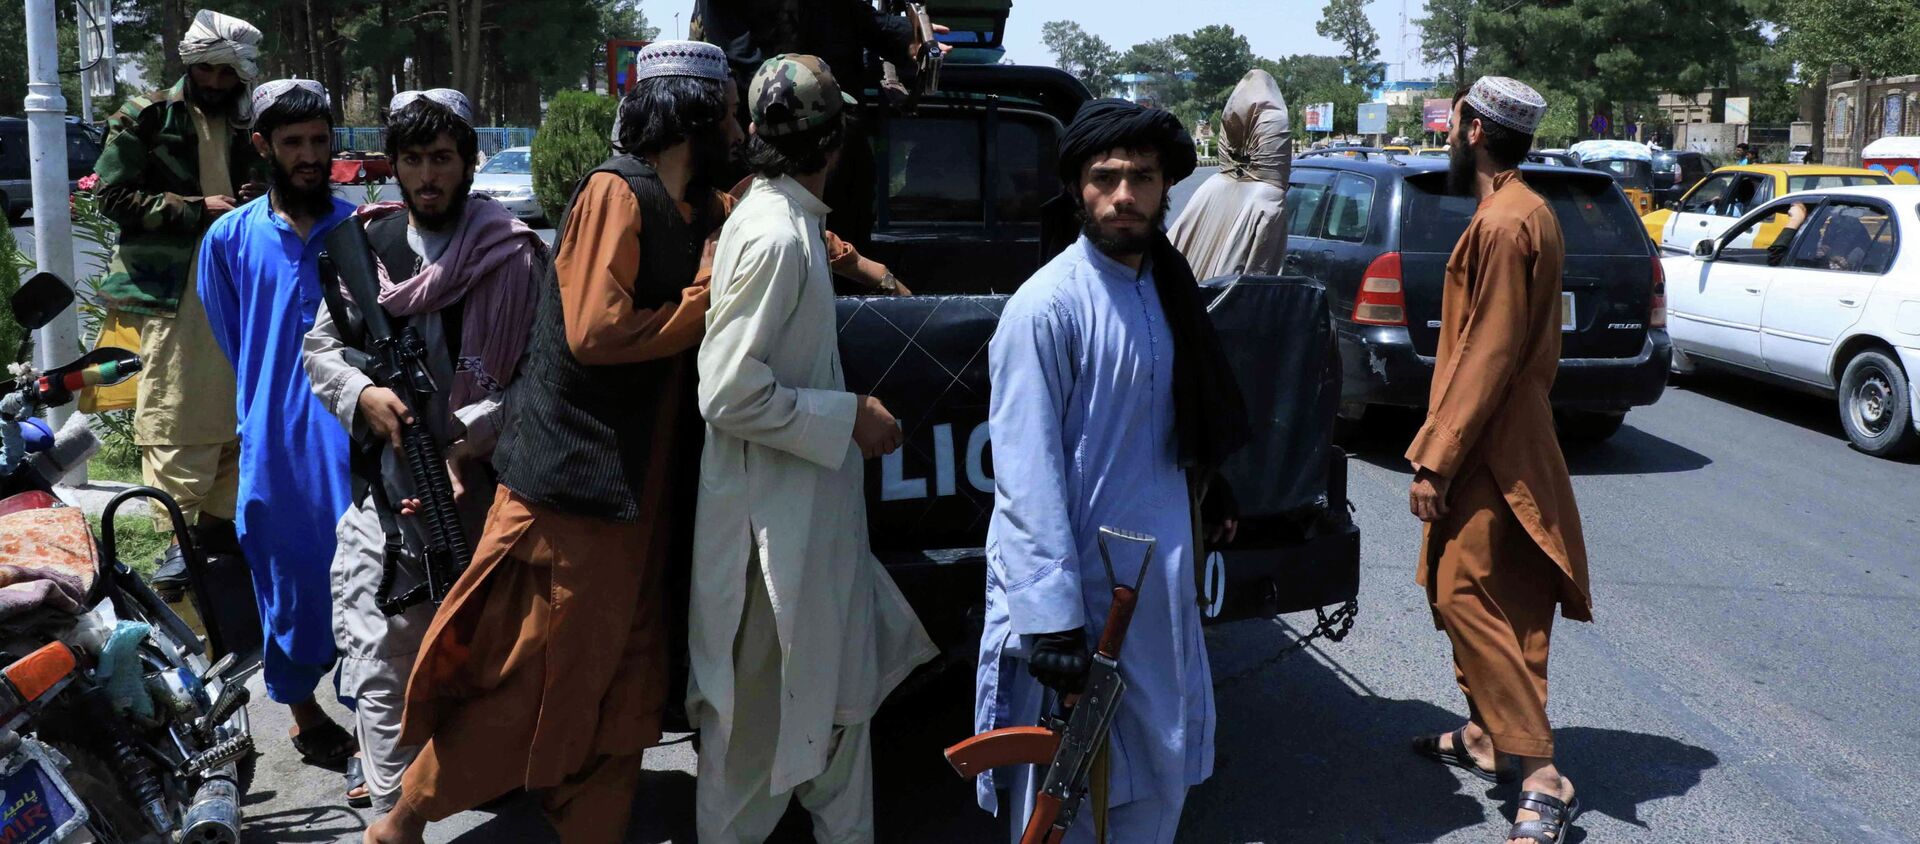 Боевики Талибана патрулируют улицу в Герате, Афганистан. 14 августа 2021 года - Sputnik Кыргызстан, 1920, 15.08.2021